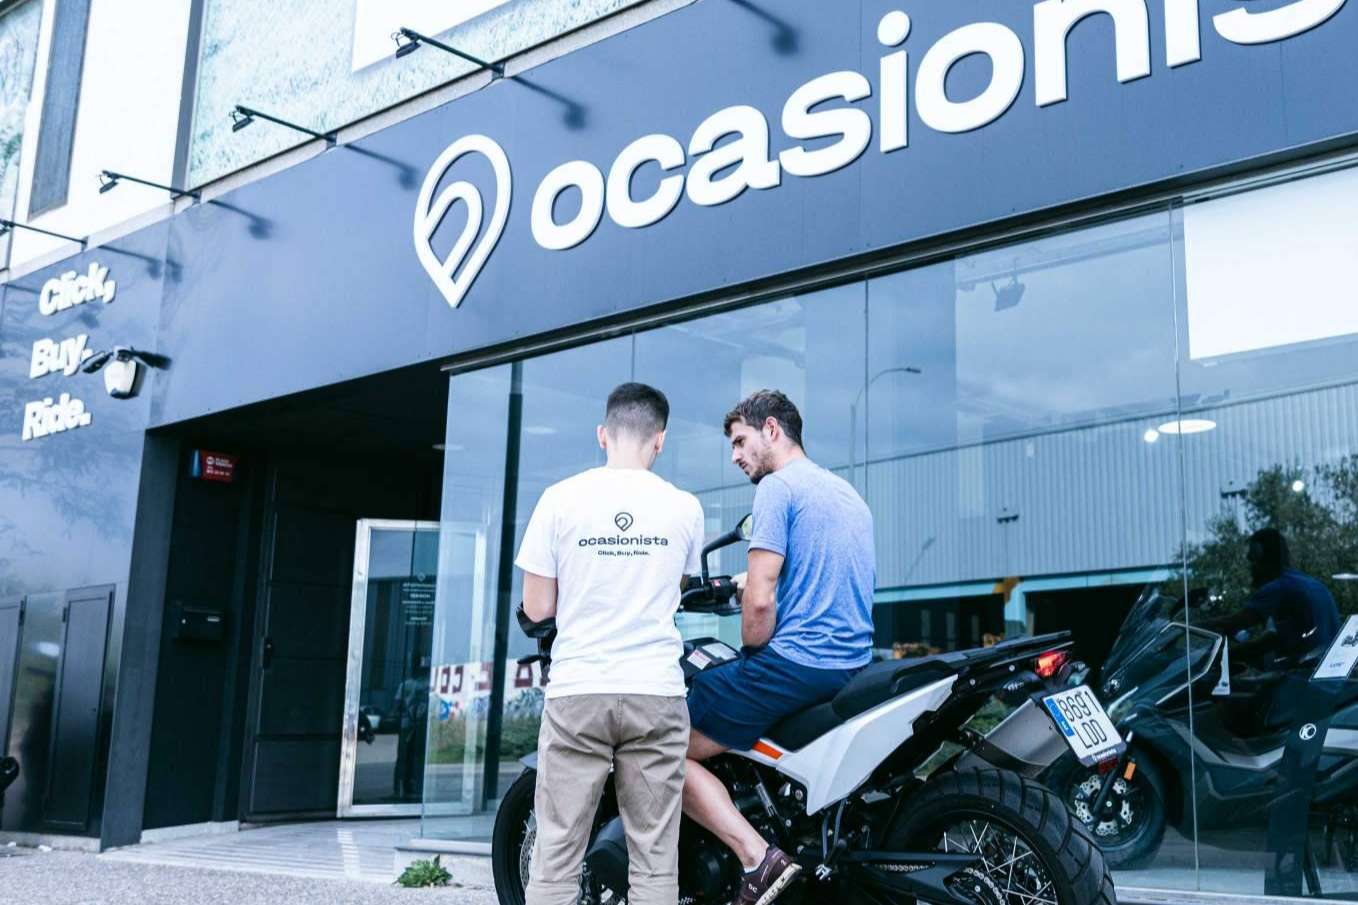 Ocasionista ofrece motos de ocasión en su nueva plataforma - El Mundo  Empresa